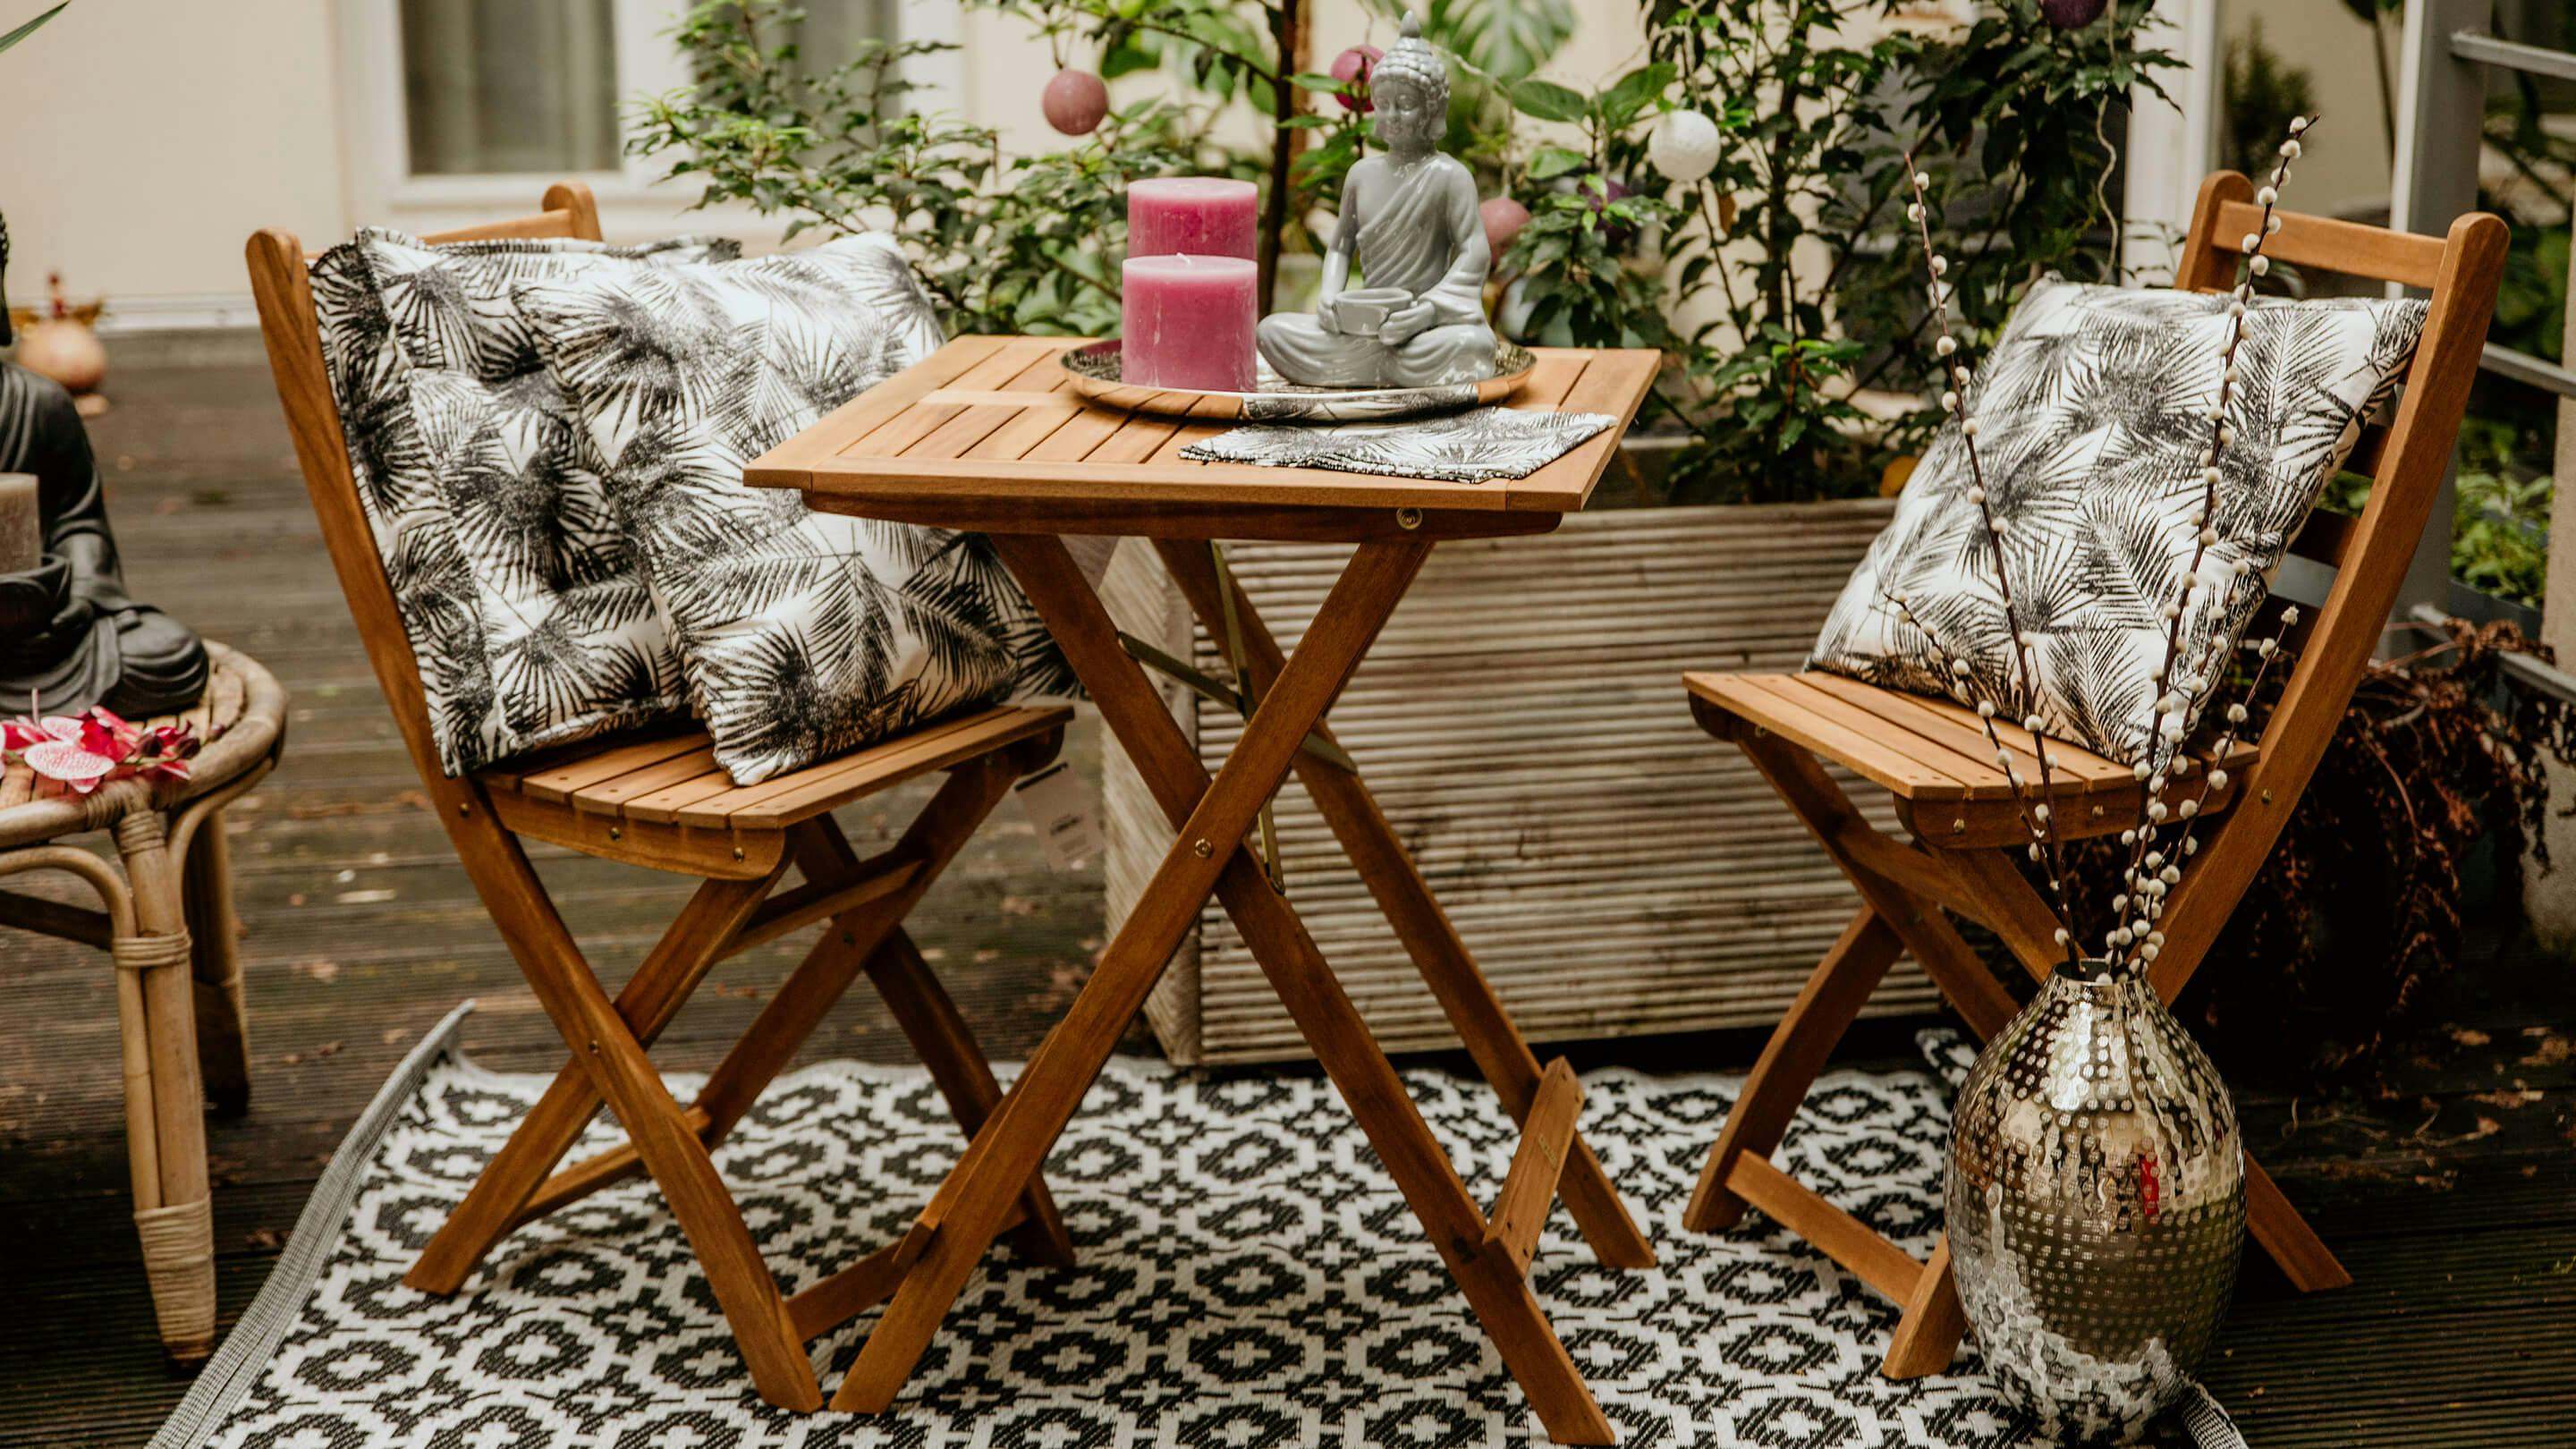 Terrasse mit kleinem Gartentisch-Set aus Massivholz, Outdoor-Teppich in Schwarz u. Weiß, Kissen und Deko-Objekten (Butlers).